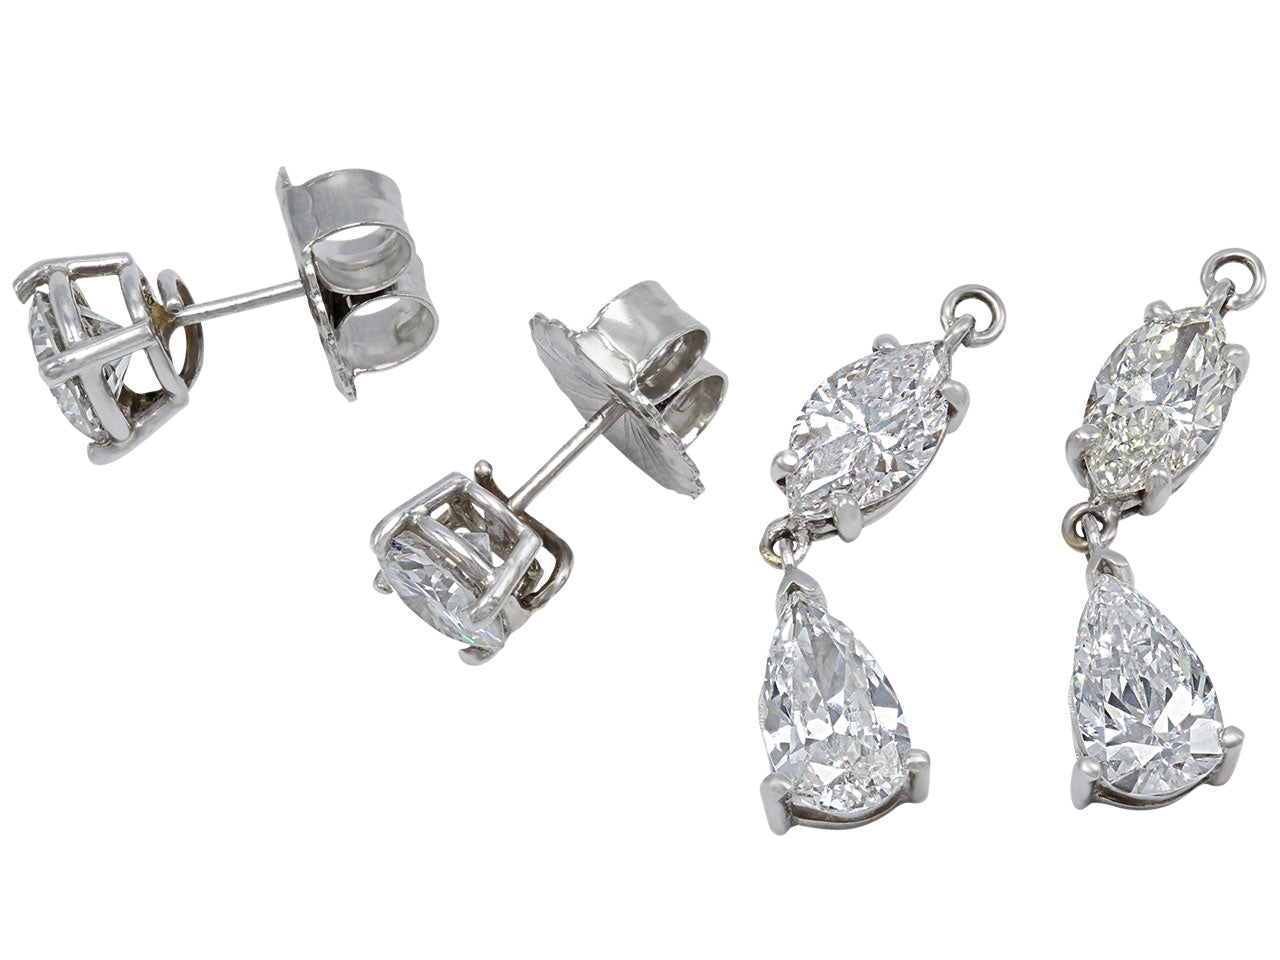 Diamond Dangle Earrings, 5.91 total carats, in Platinum